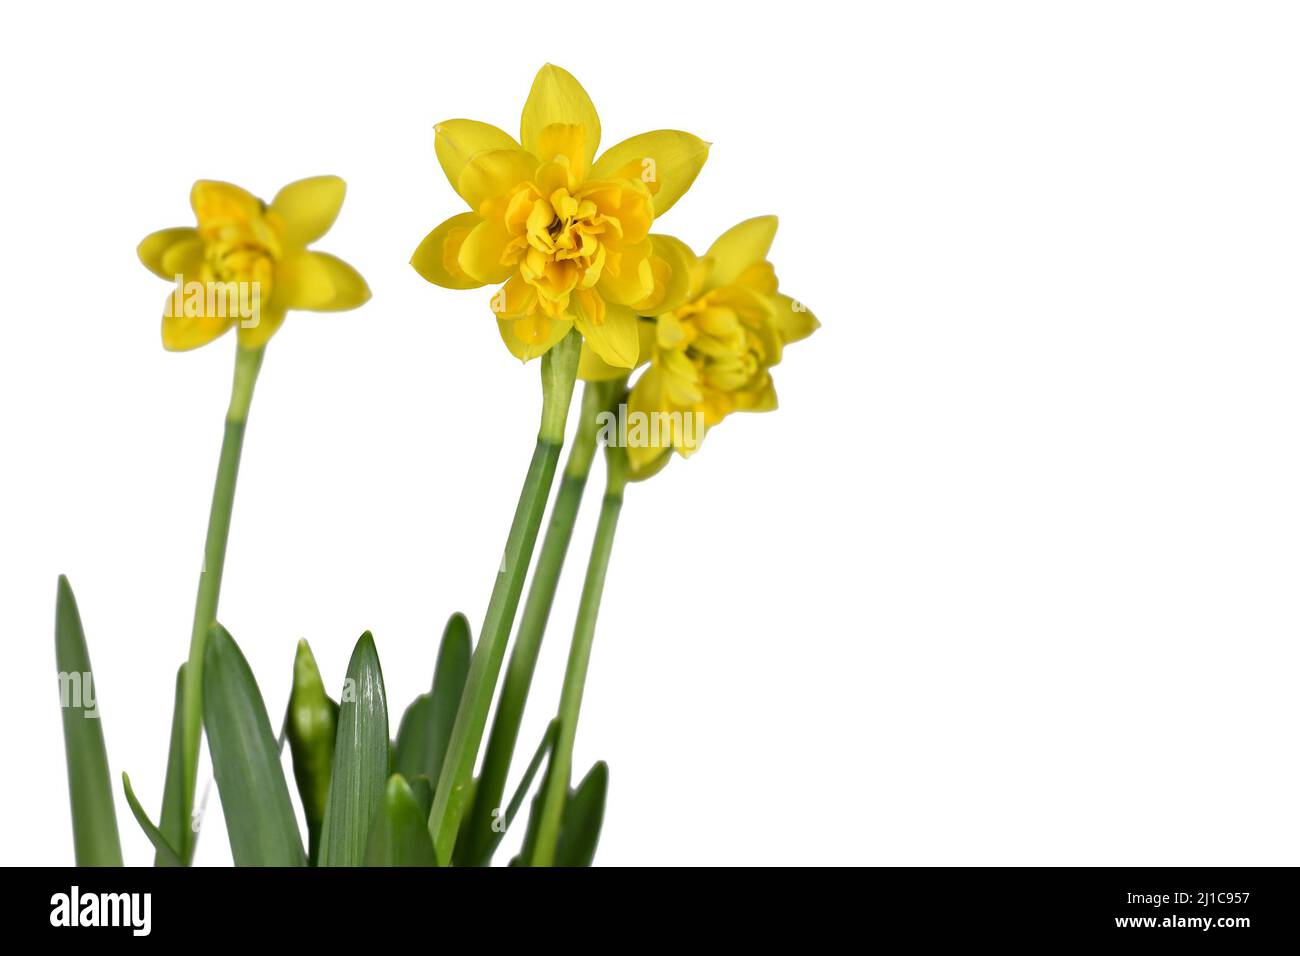 Giallo Narciso Clamineus fiori primavera su sfondo bianco Foto Stock